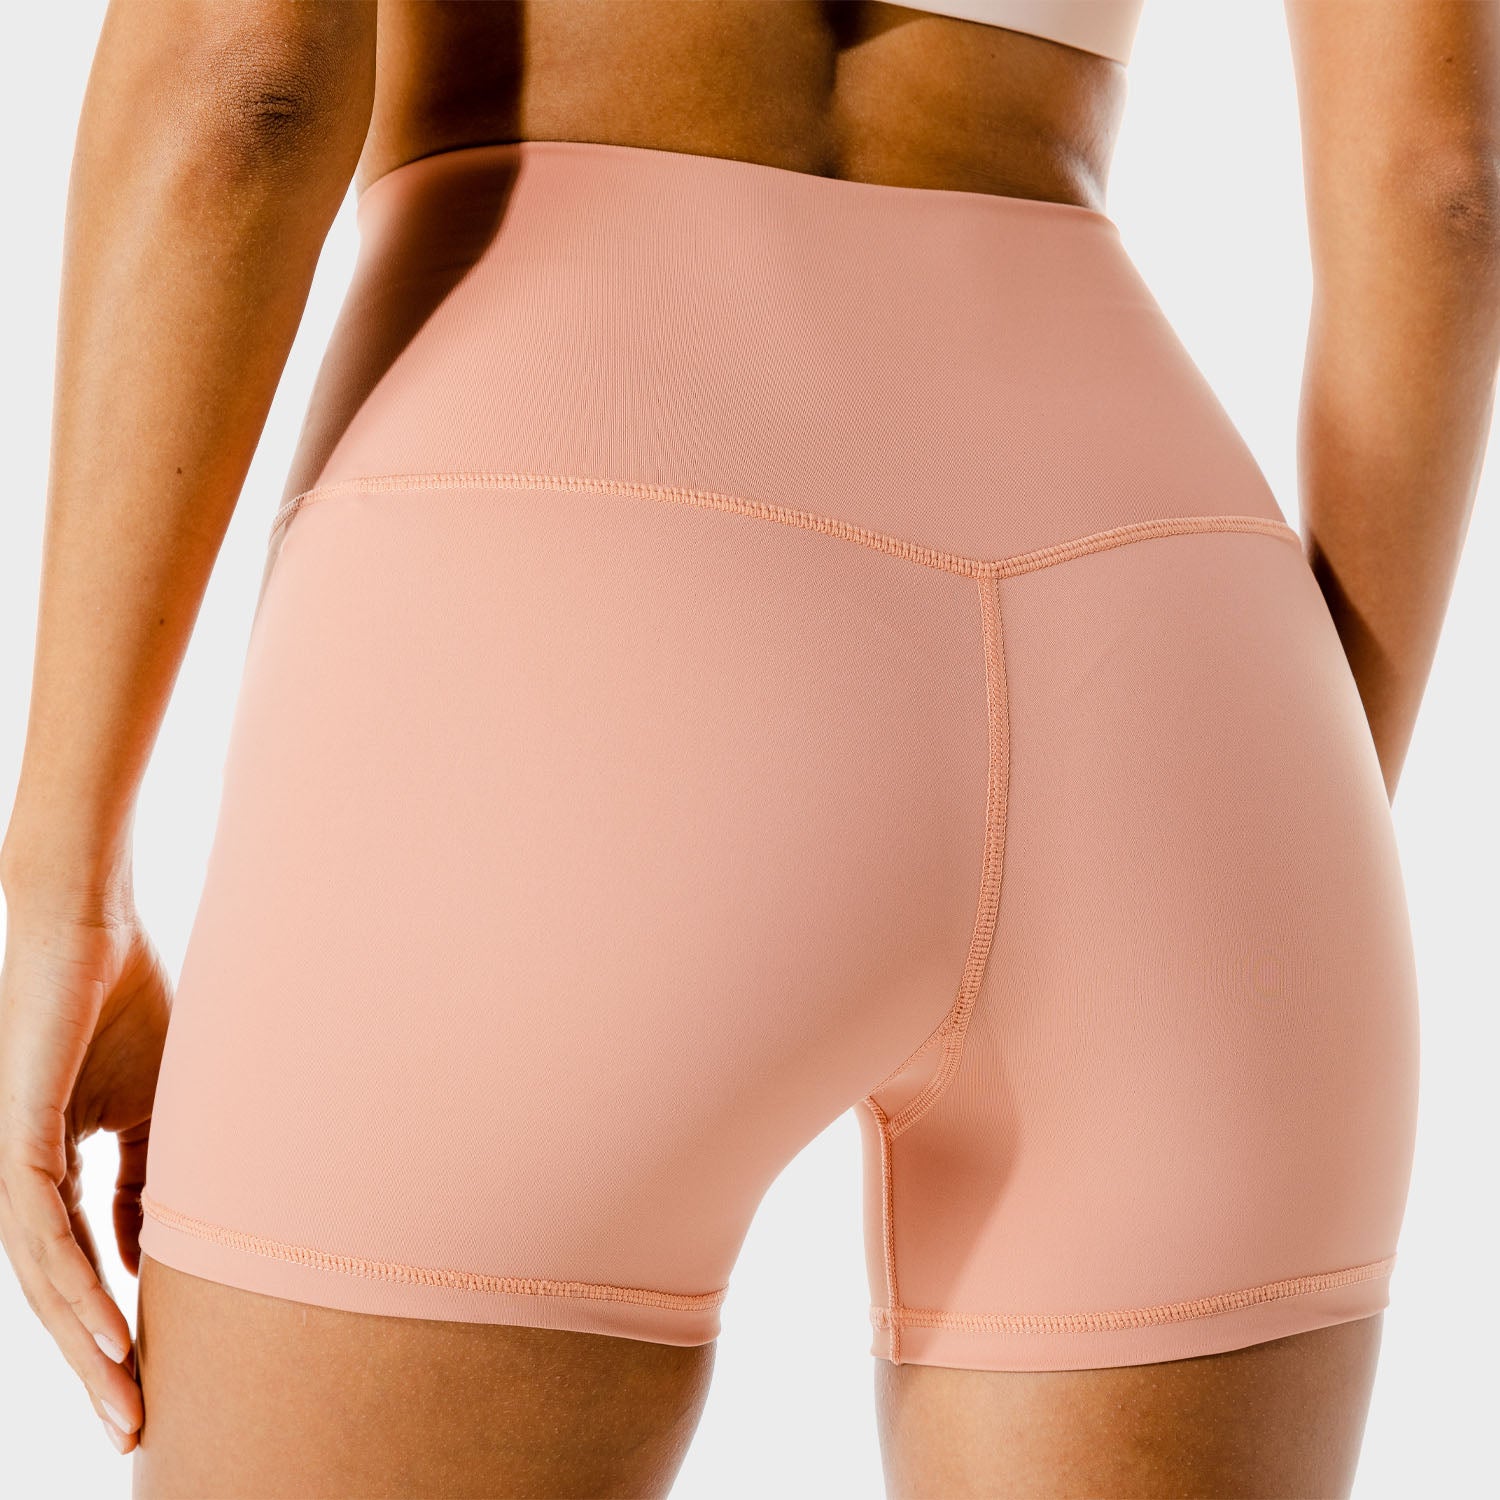 Pink Gym Girl Shorts